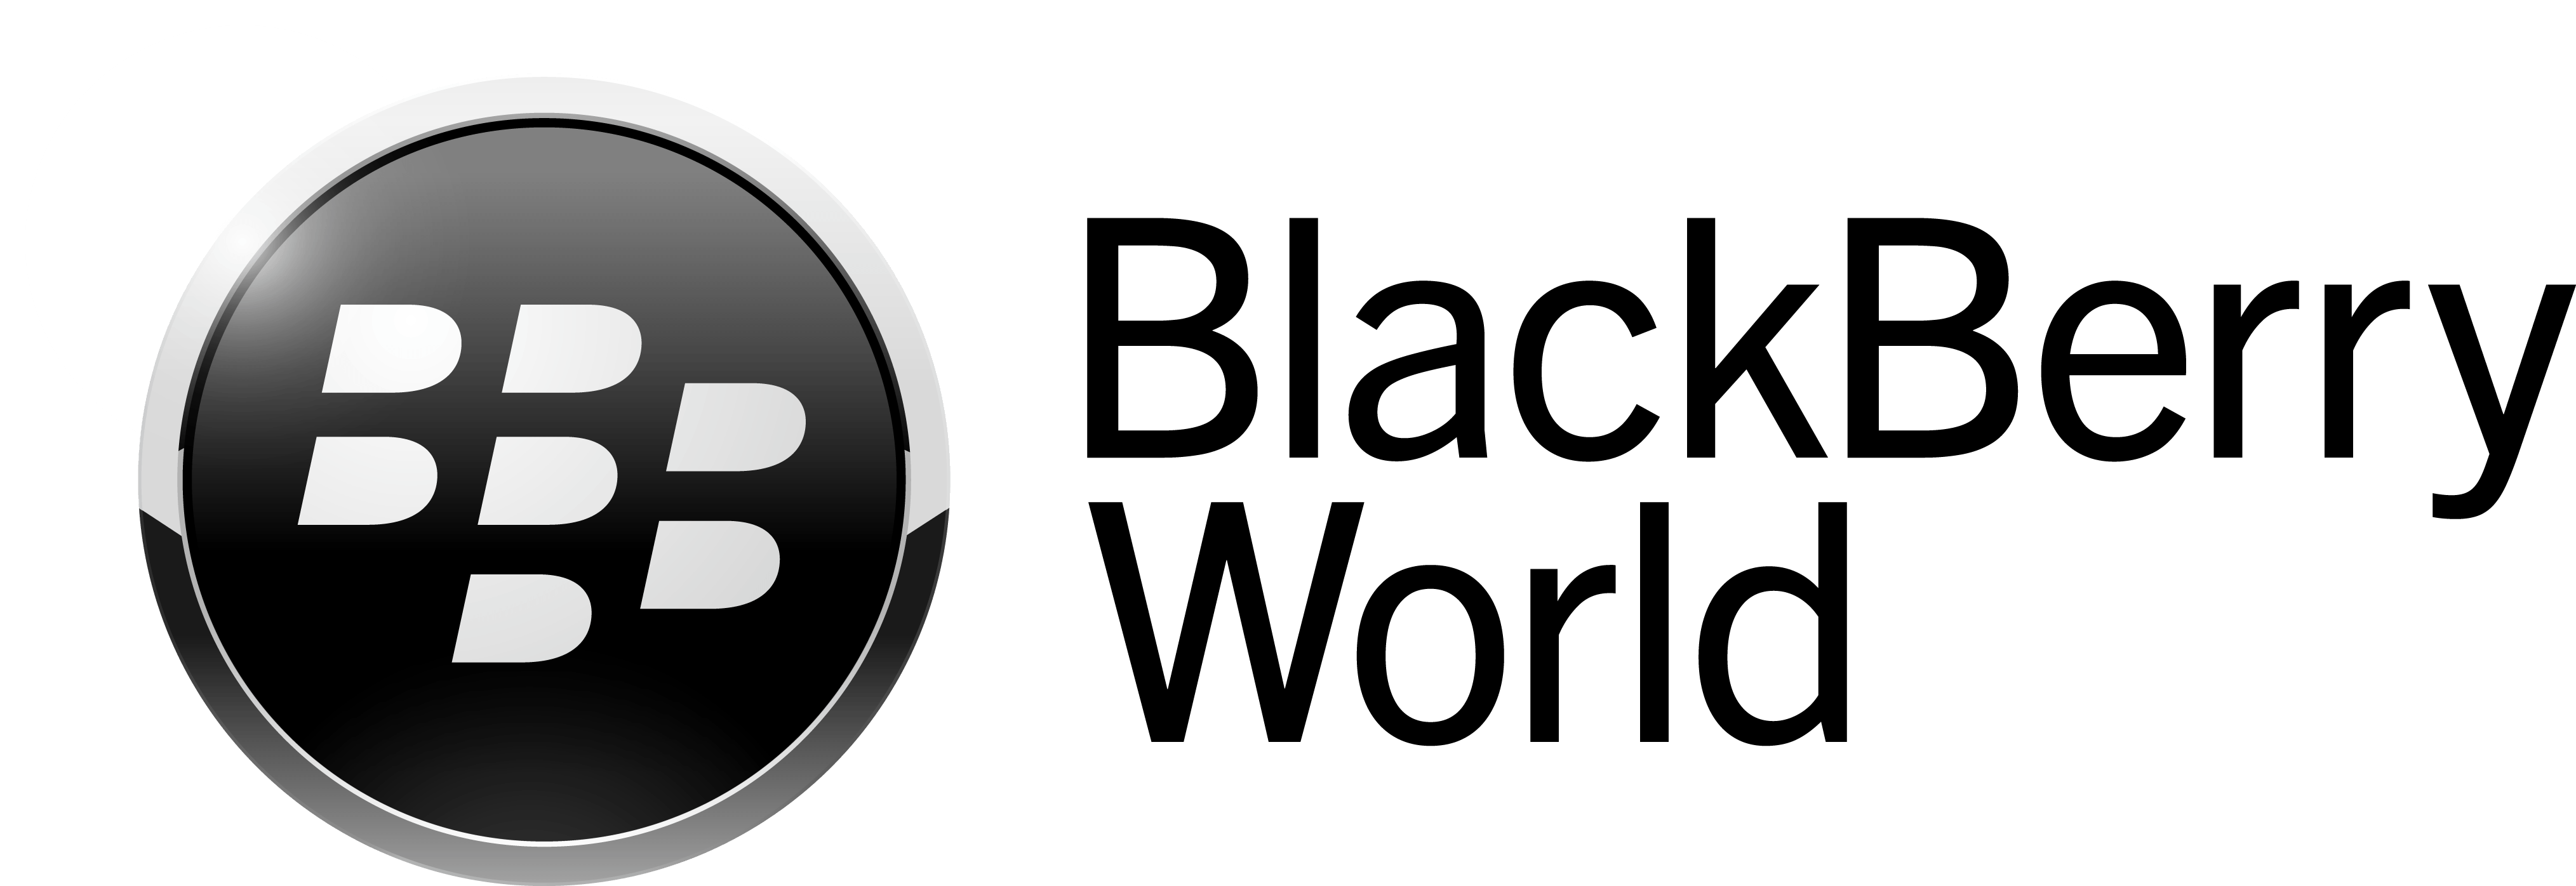 App World Logo - BlackBerry App World Now Called BlackBerry World; Not Just For Apps ...